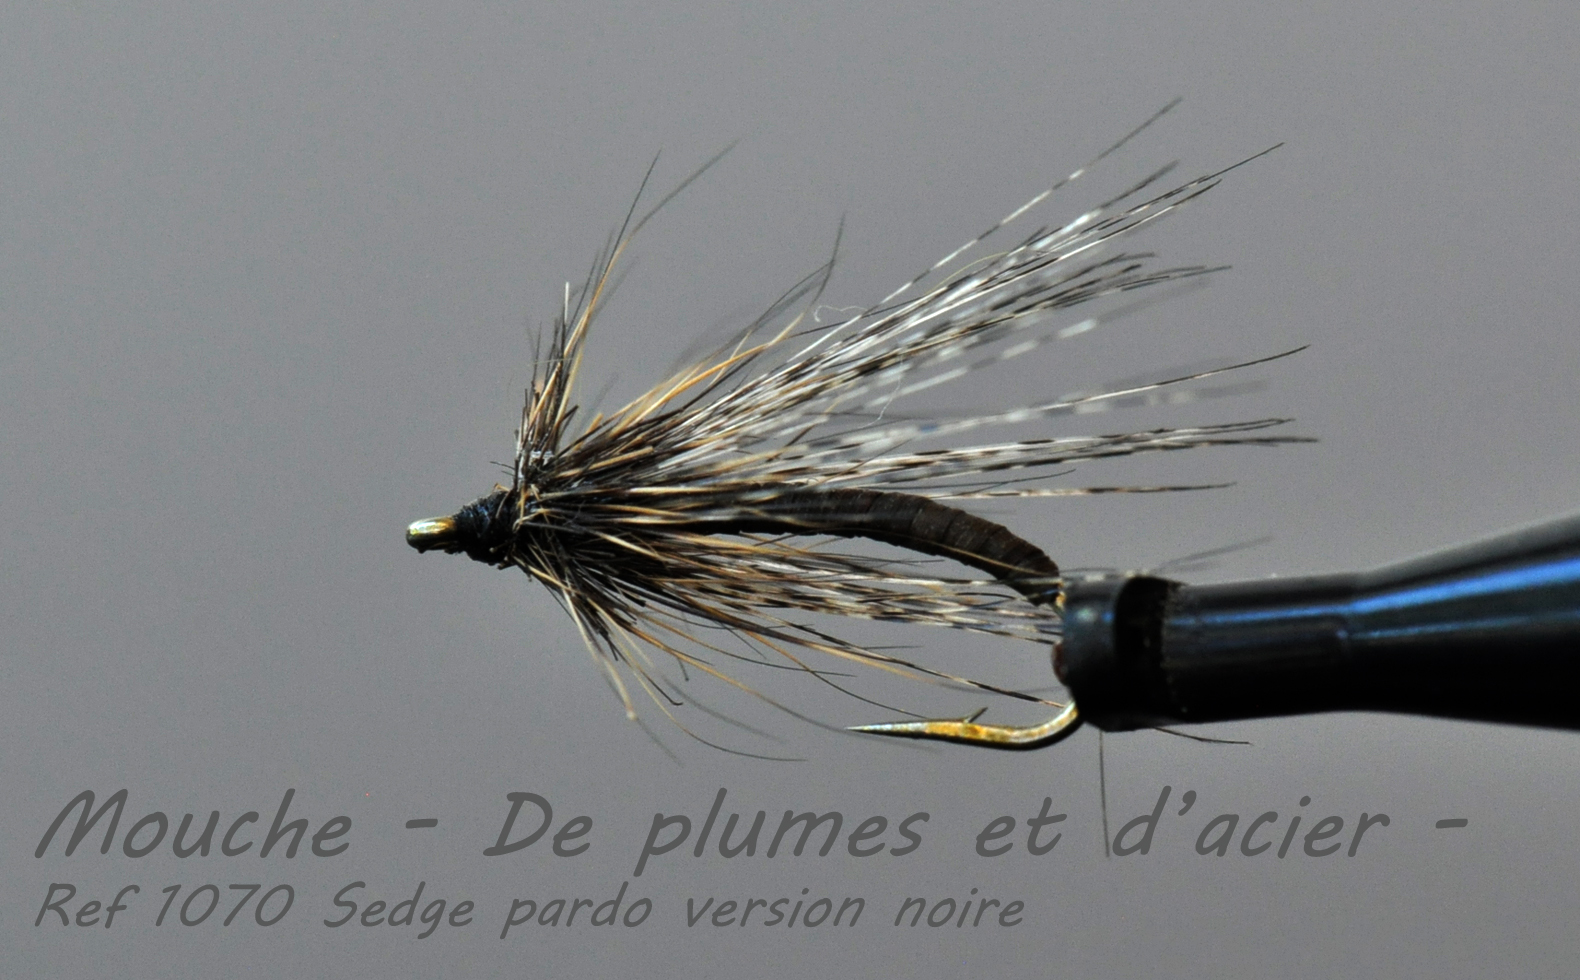 Mouche pêche "De plumes et d'acier" Ref 1070 Sedge Pardo noir